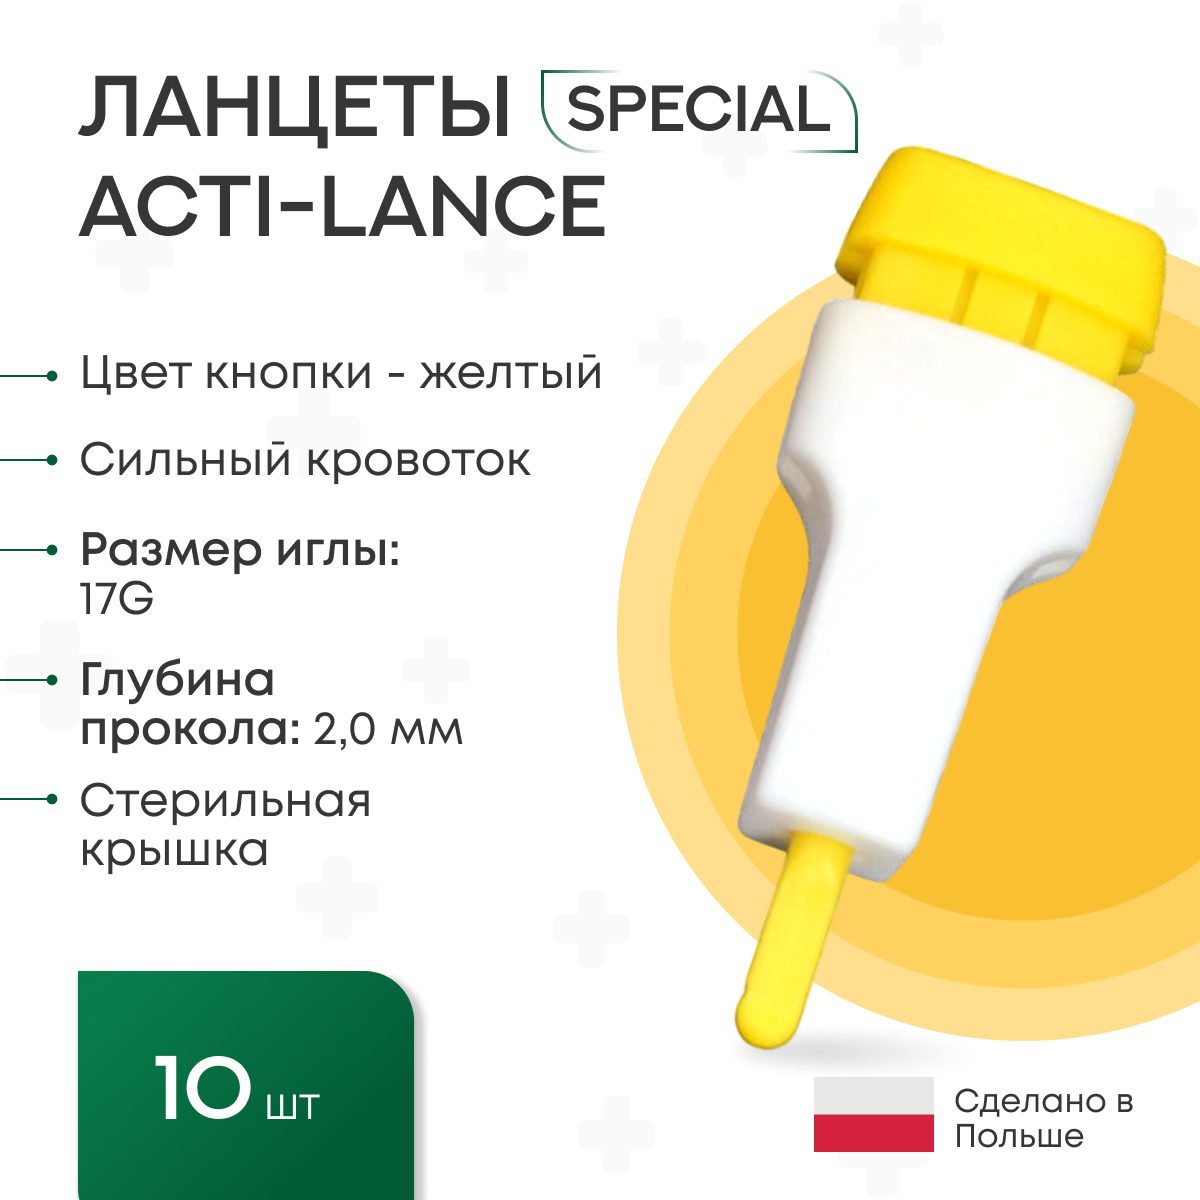 Ланцеты Acti-lance Special для капиллярного забора крови 10 шт, глубина прокола 2,0 мм, желтые